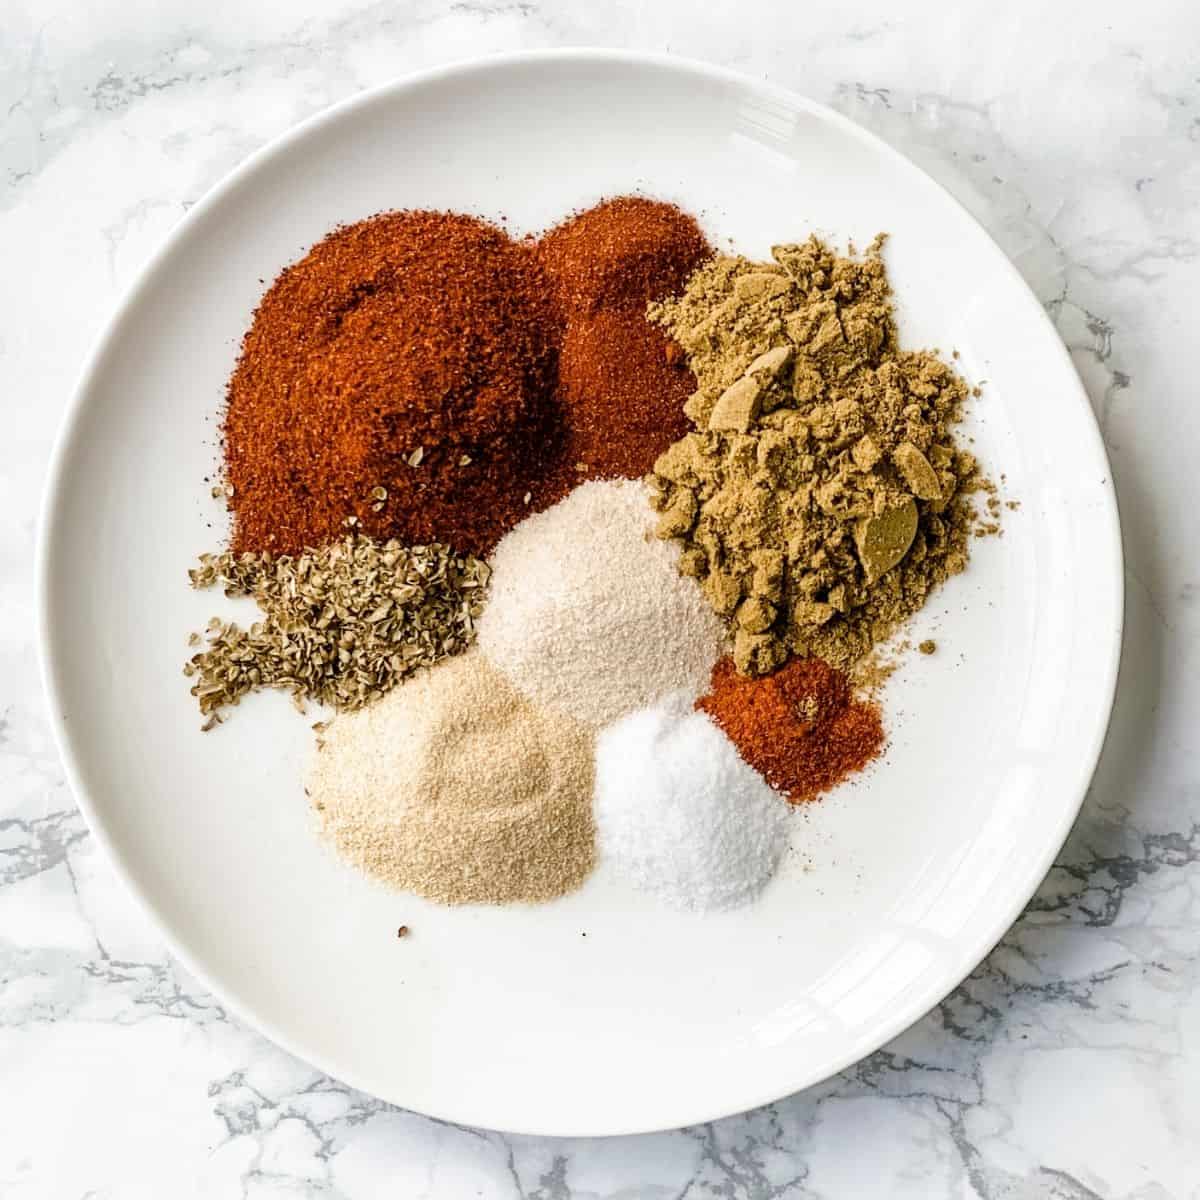 ingredients to make homemade fajita seasoning mix.